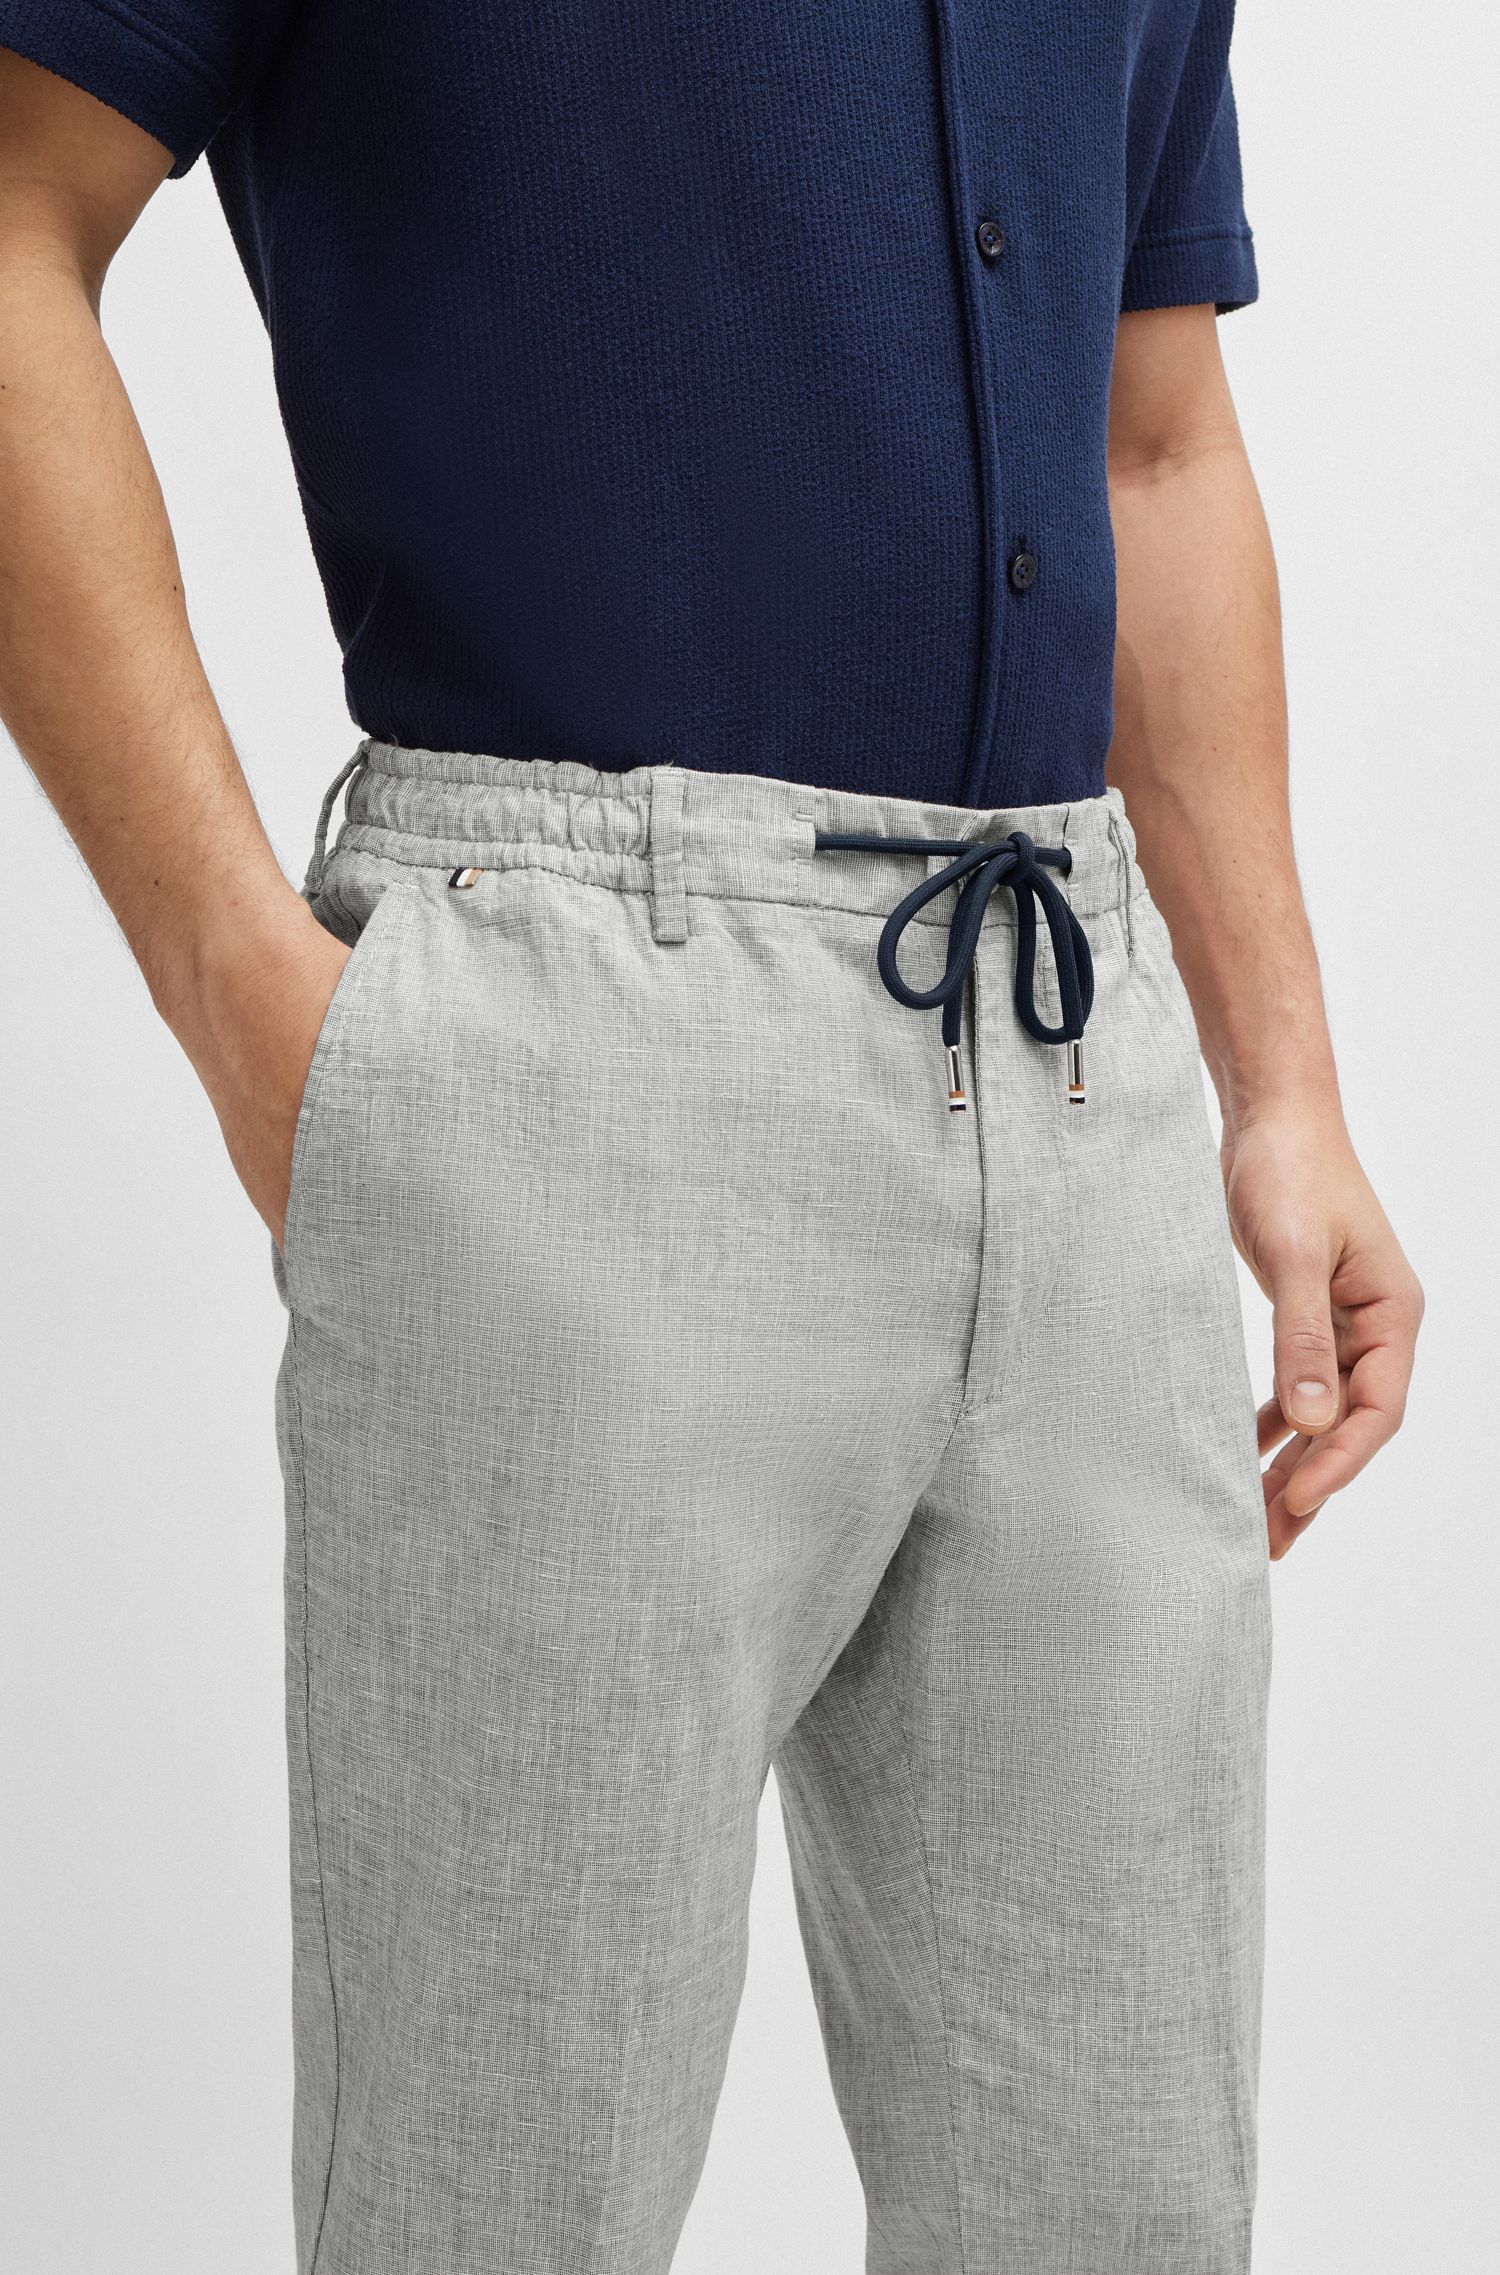 棉质和亚麻混纺弹性面料常规版型长裤